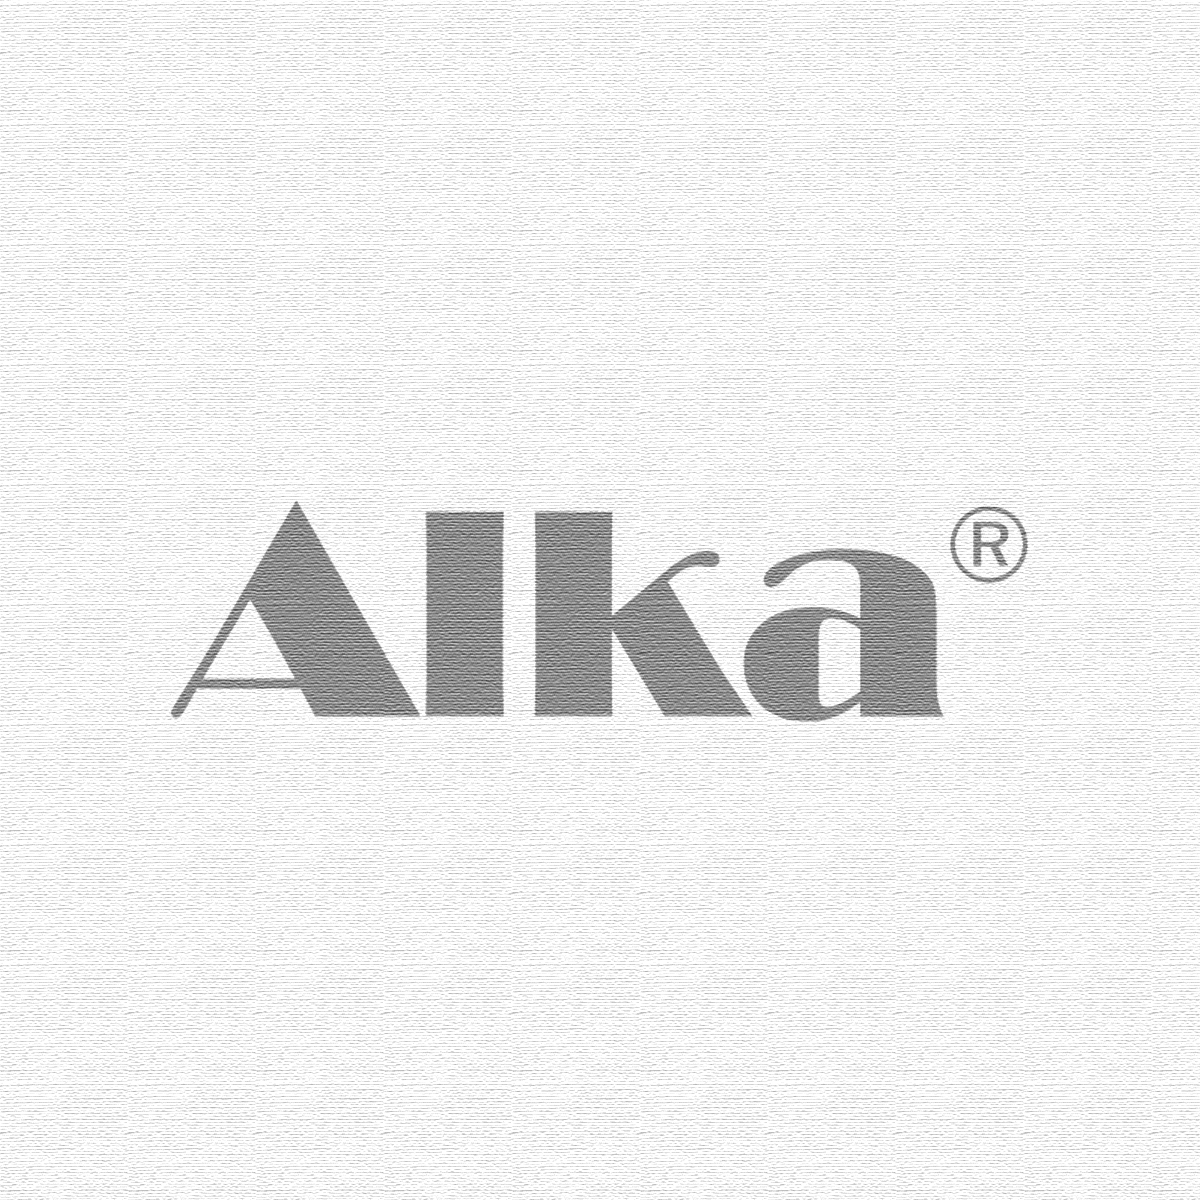 Alka® Tabs Original - 60 capsules